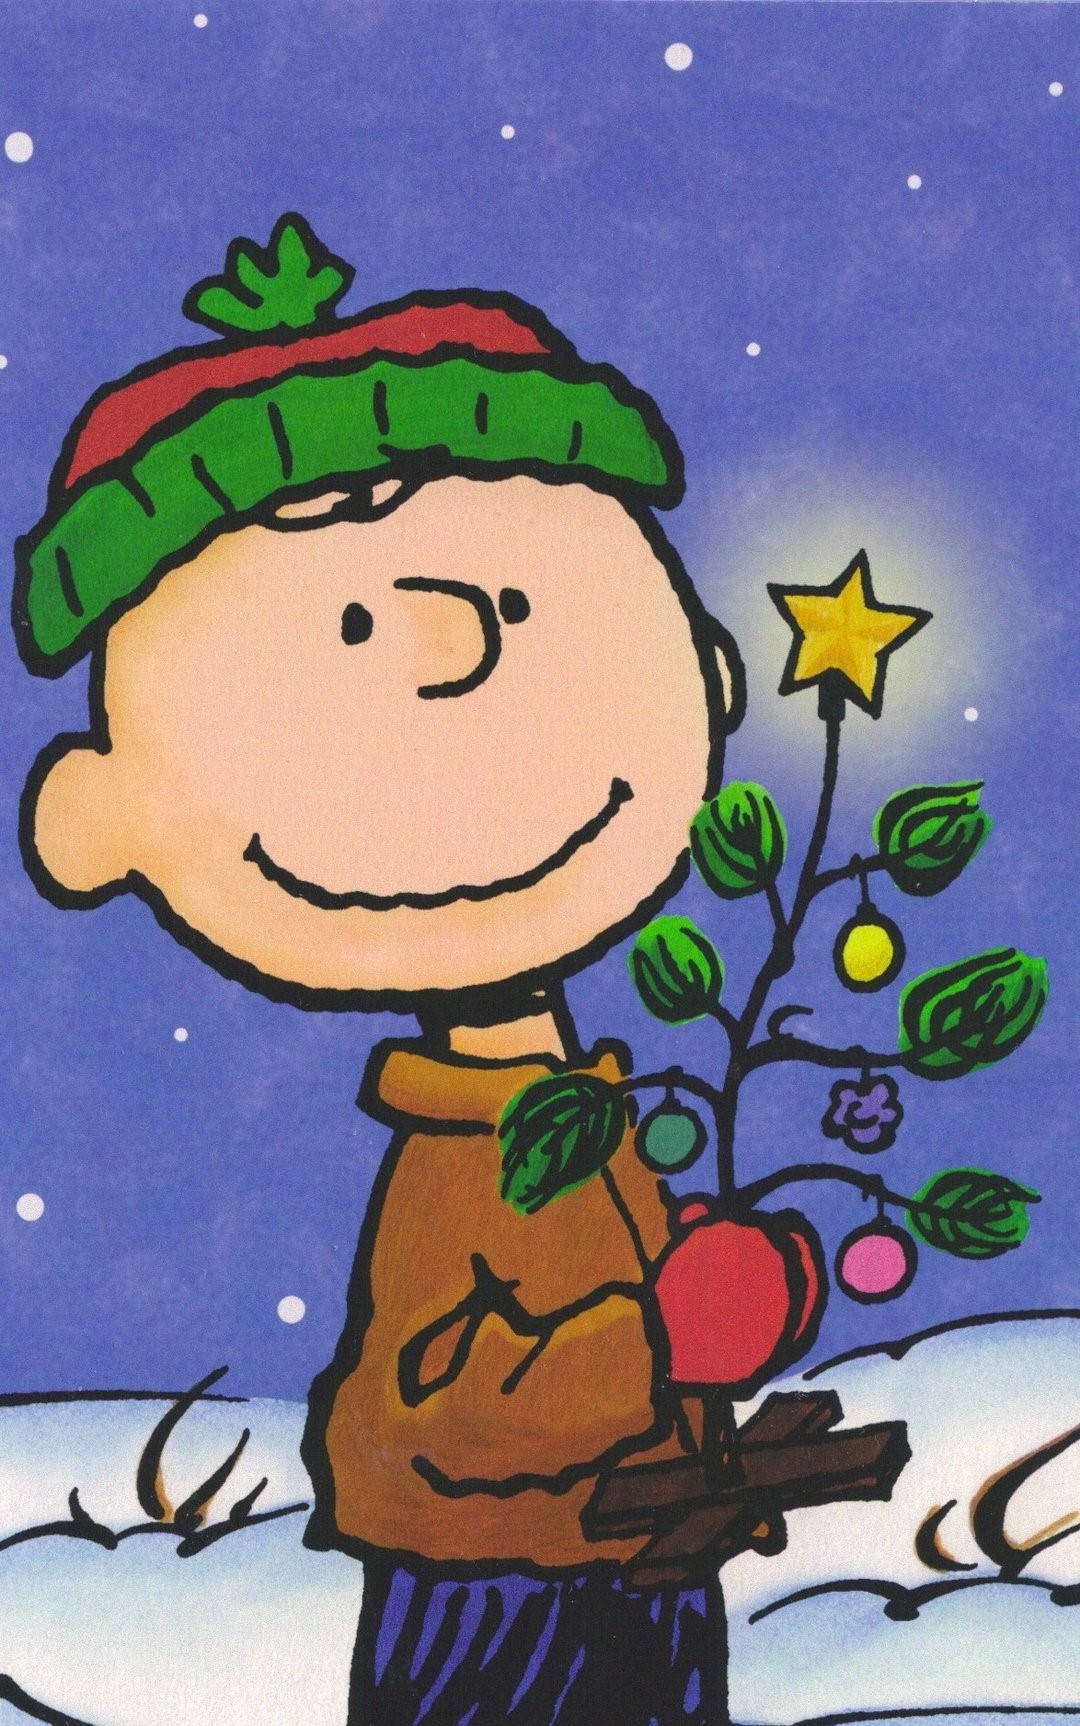 Fejre jul sammen med Snoopy Wallpaper